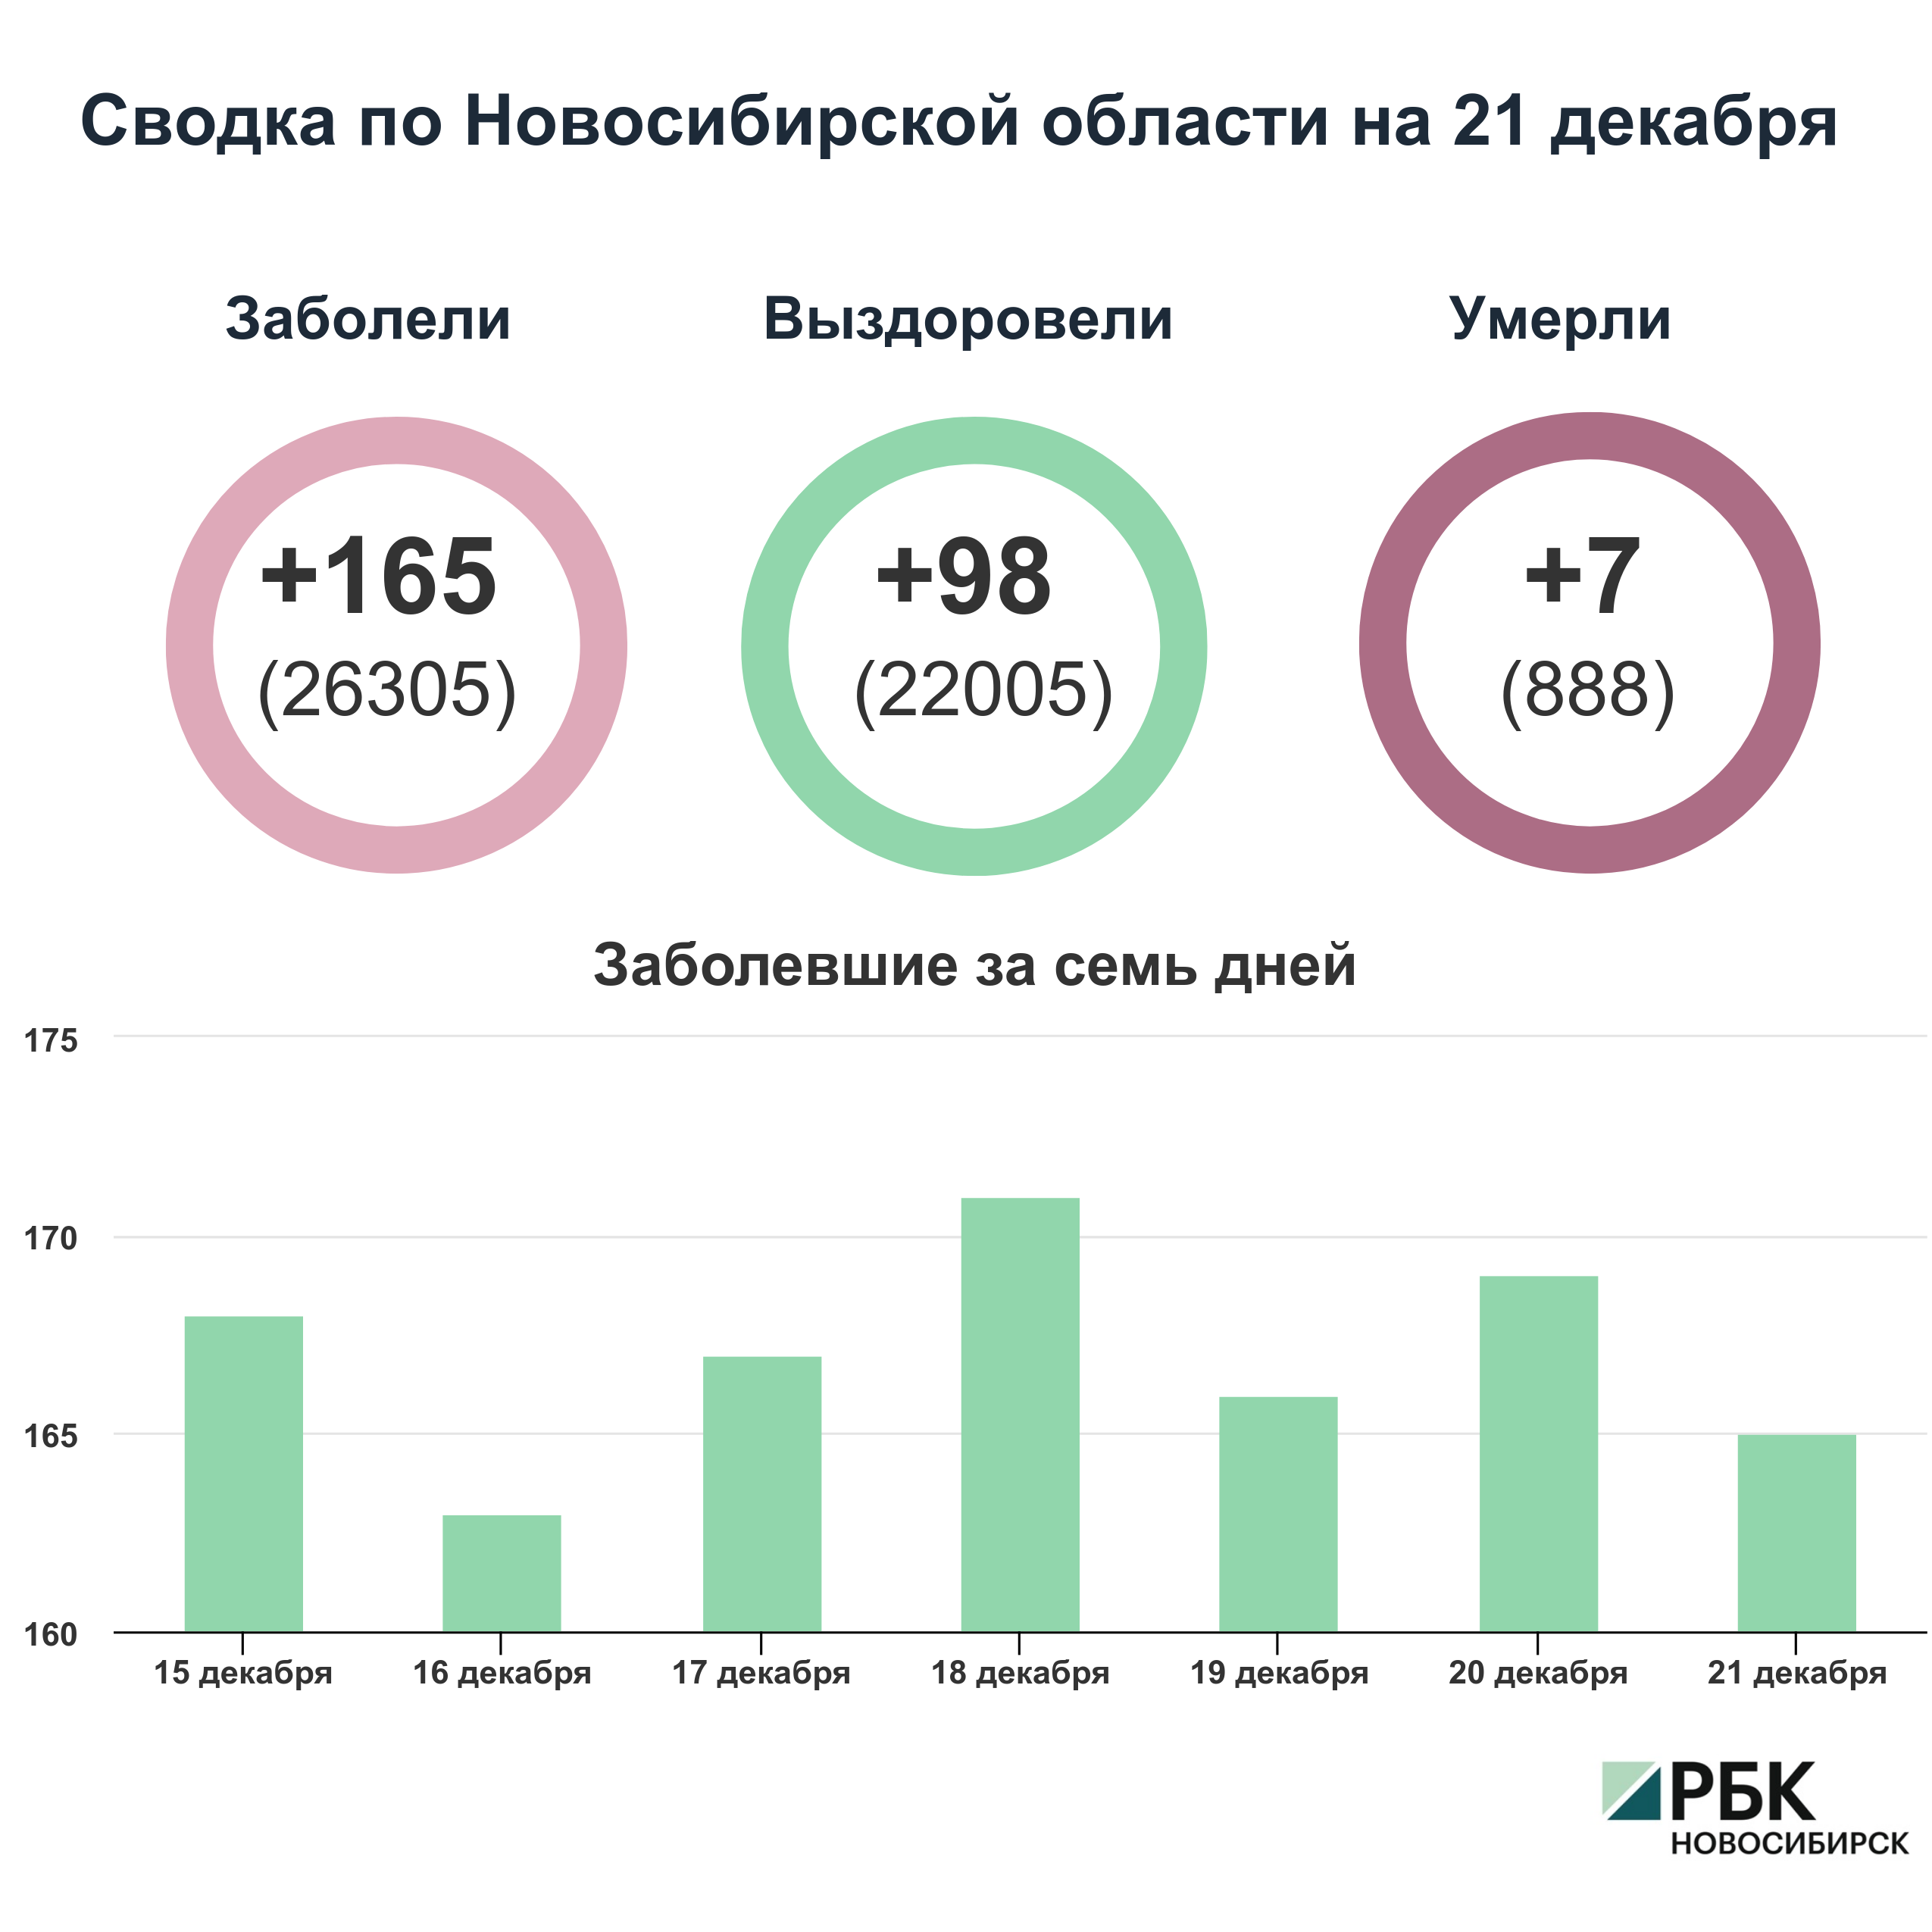 Коронавирус в Новосибирске: сводка на 21 декабря